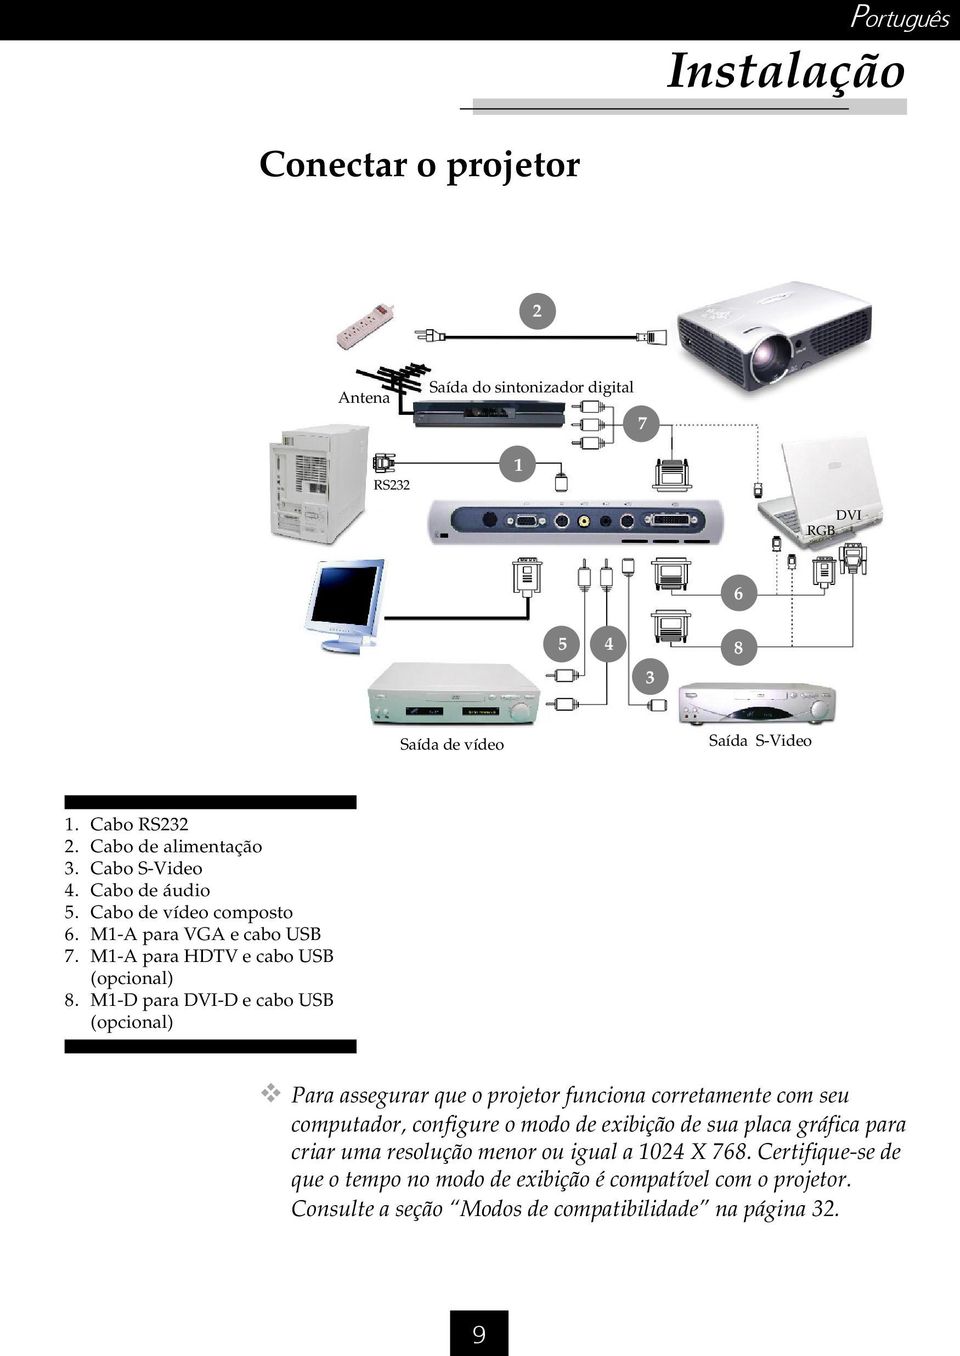 M1-D para DVI-D e cabo USB (opcional) Para assegurar que o projetor funciona corretamente com seu computador, configure o modo de exibição de sua placa gráfica